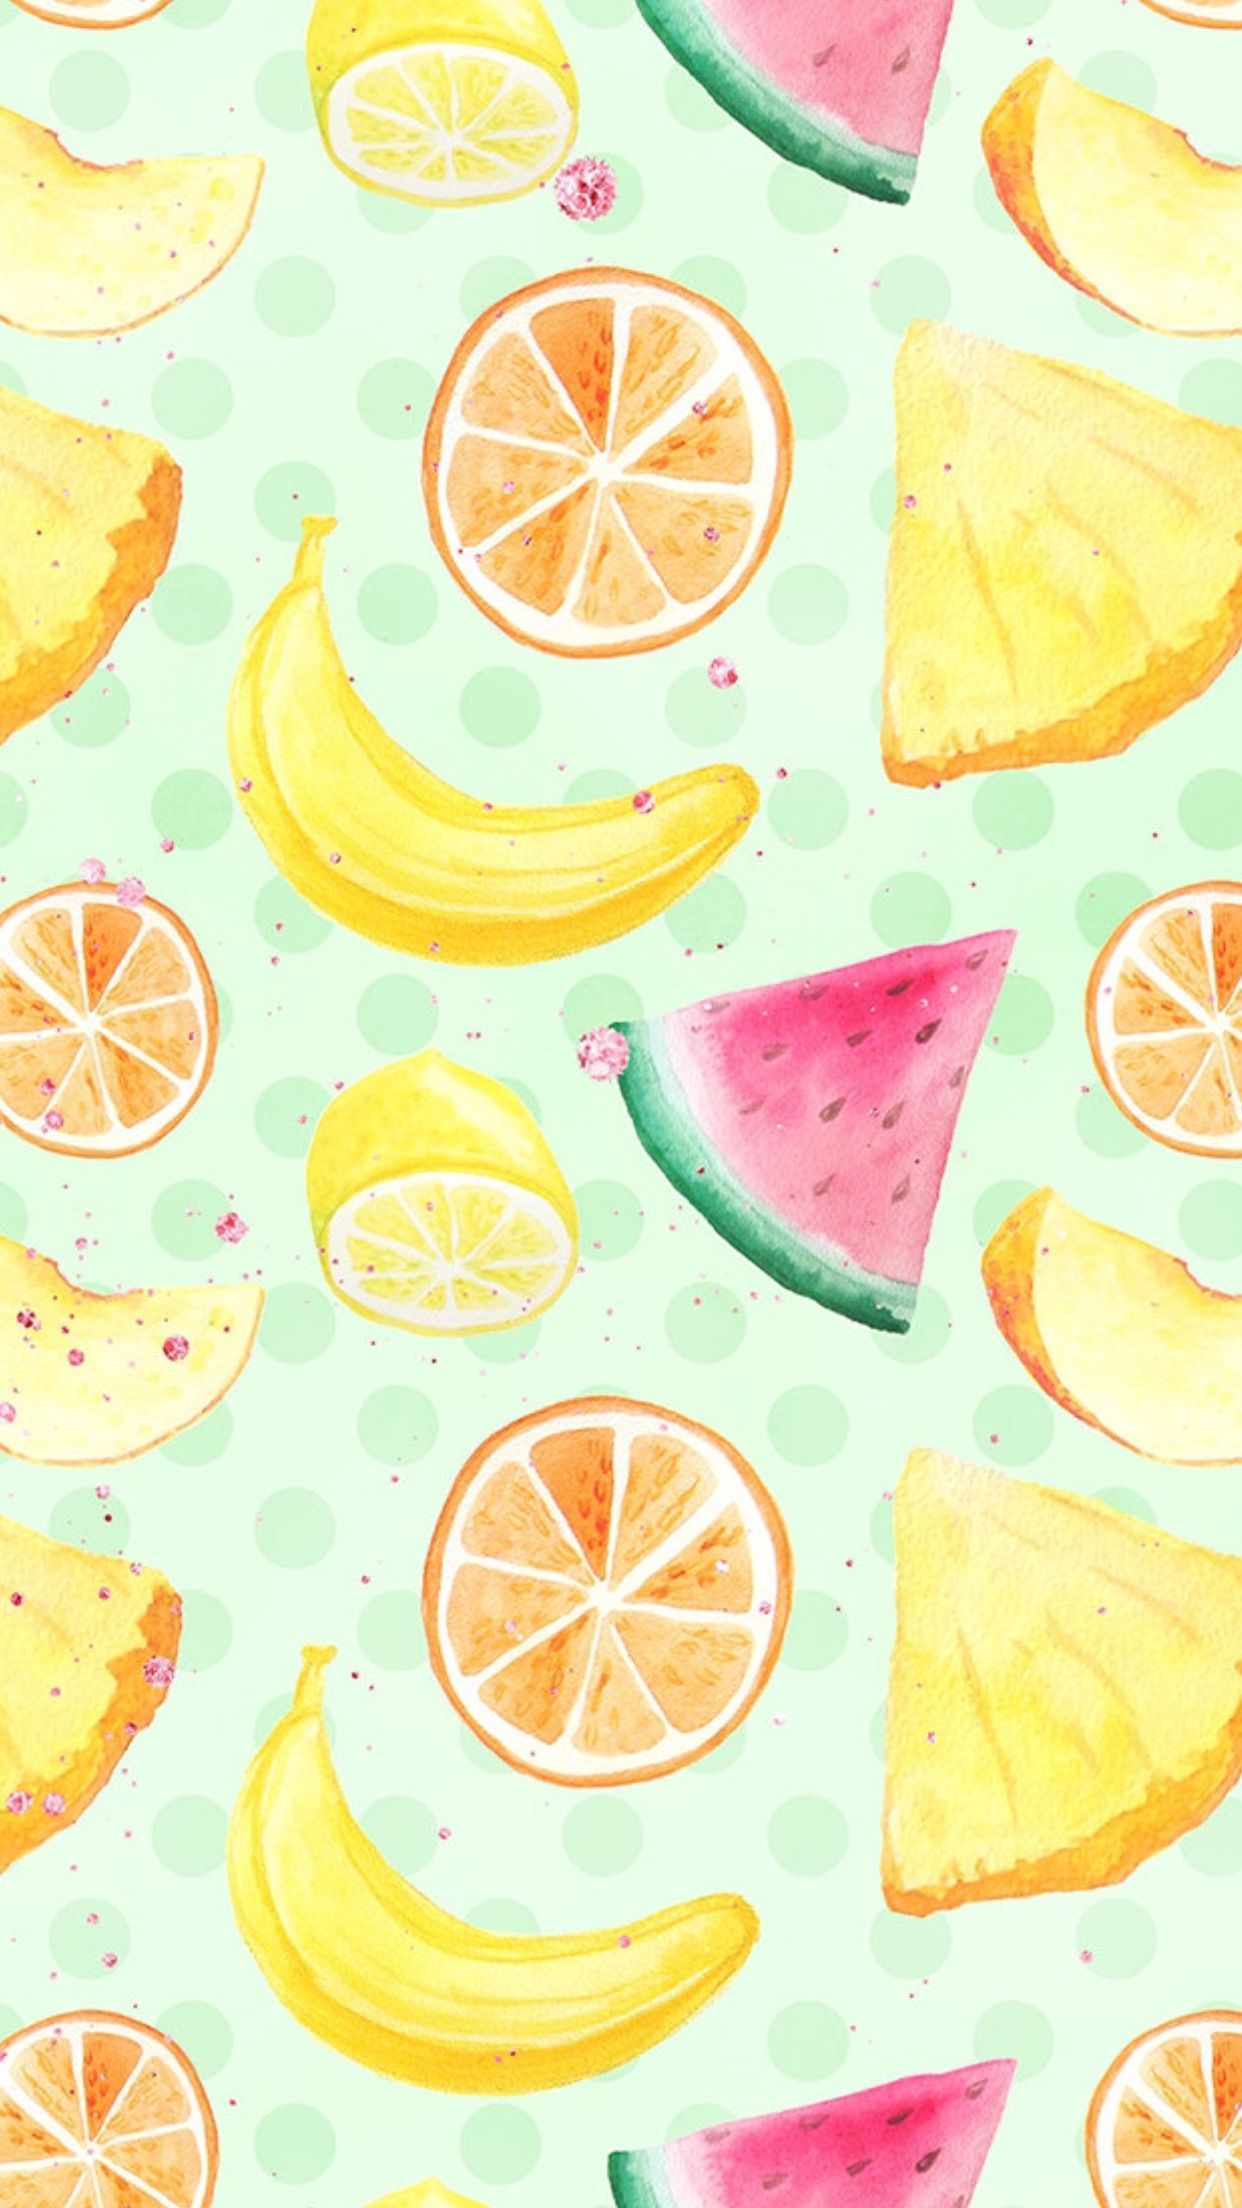 Handdoek van maken, wat zal de douche er lekker van gaan smaken= HUMOR LOL***:)*** :) :) :). Fruit wallpaper, Summer wallpaper, Cute food wallpaper